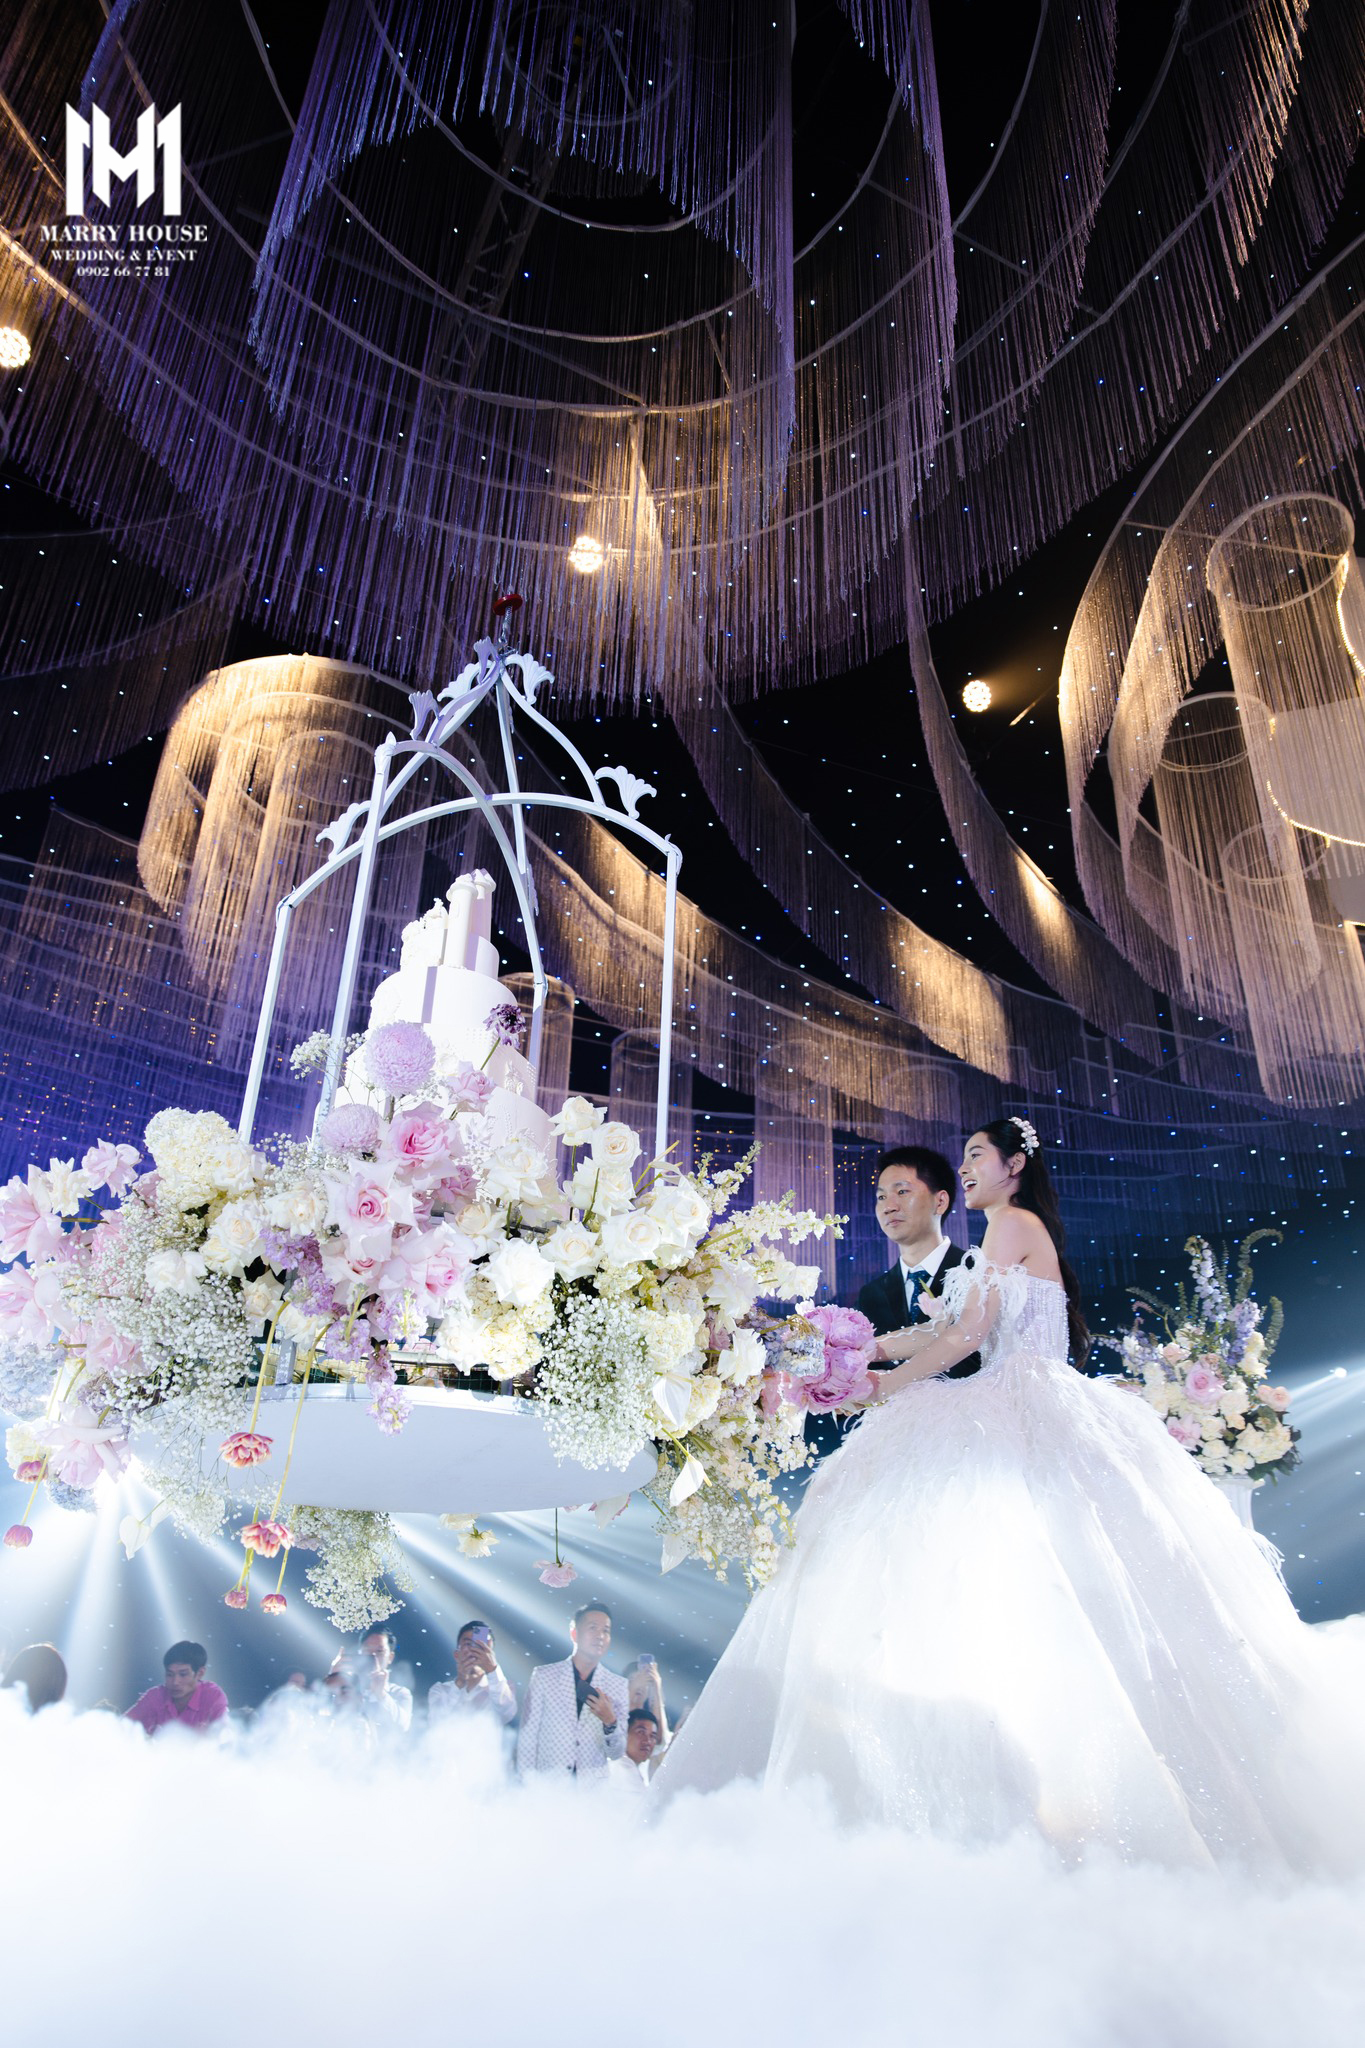 Marry House - Hoàn thiện đám cưới với 6 tấn hoa trong vòng 1 tháng bởi 150 nhân công - Ảnh 4.